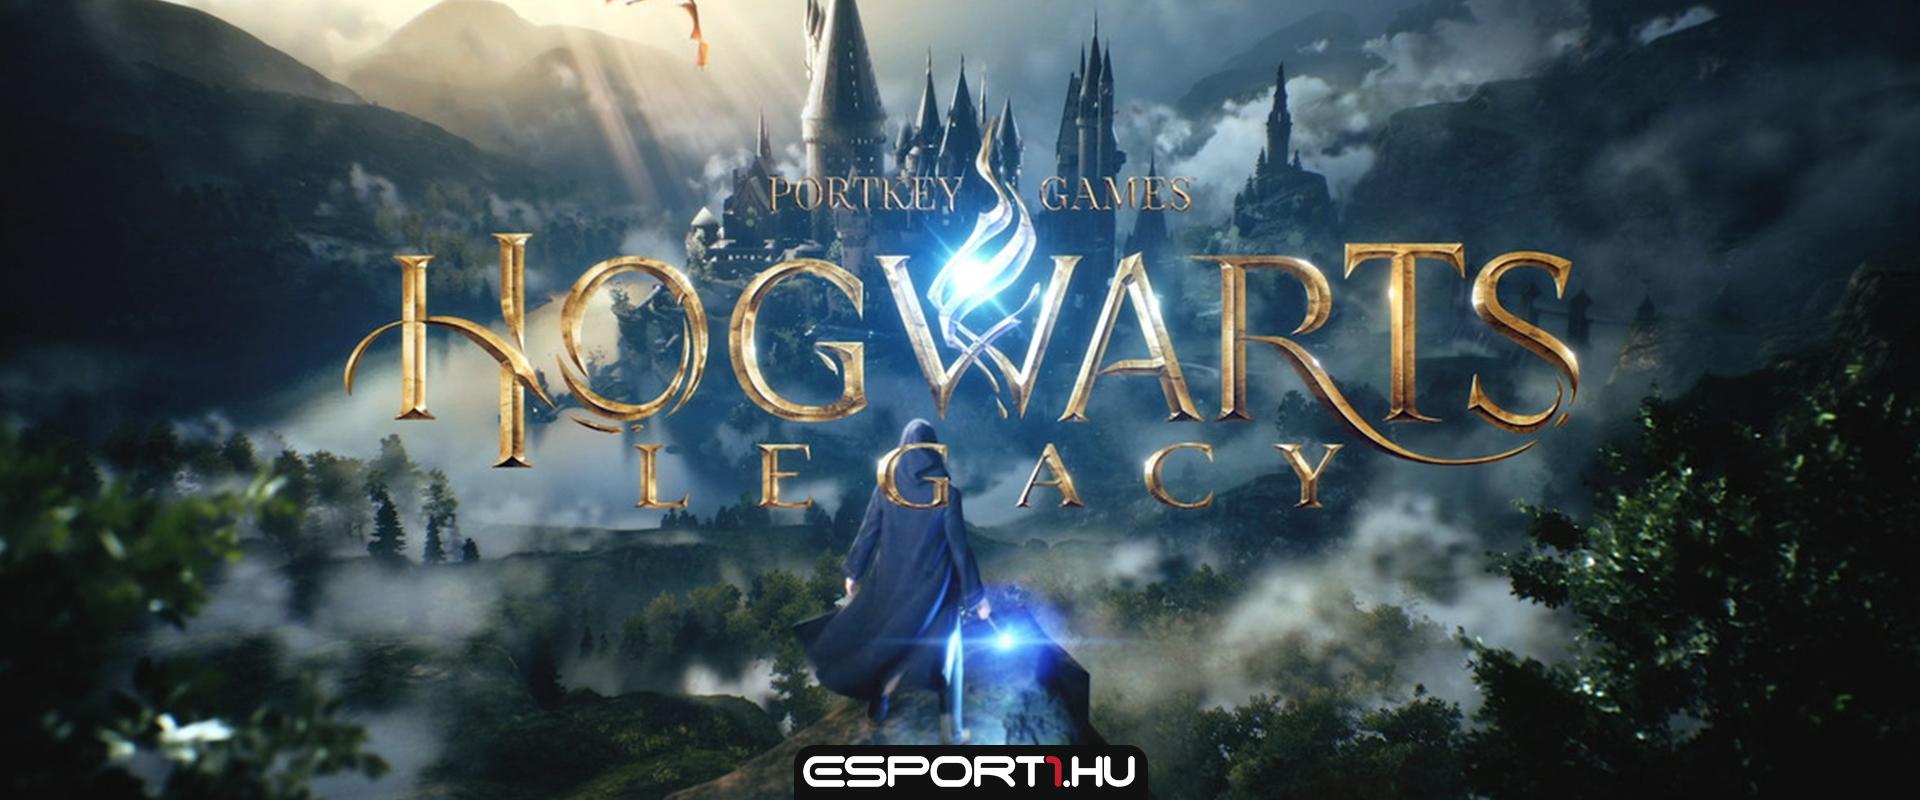 Hogwarts Legacy: még egy kicsit várnunk kell a játék megjelenésére